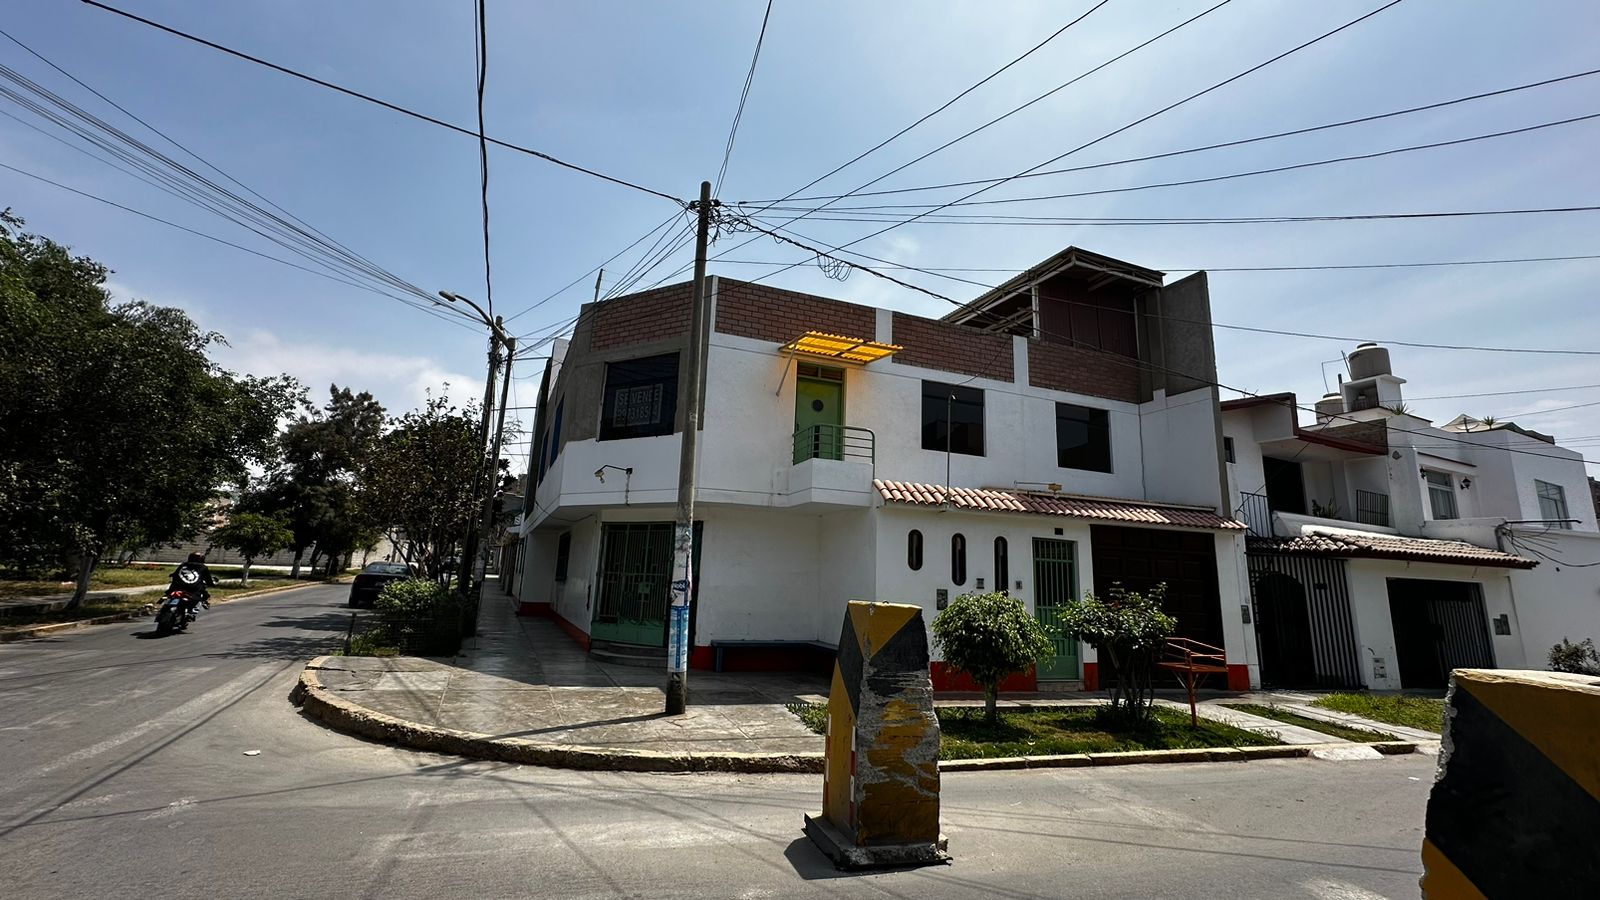 Espectacular Casa en Esquina con Dos Departamentos de Estreno y Local Comercial,Trujillo